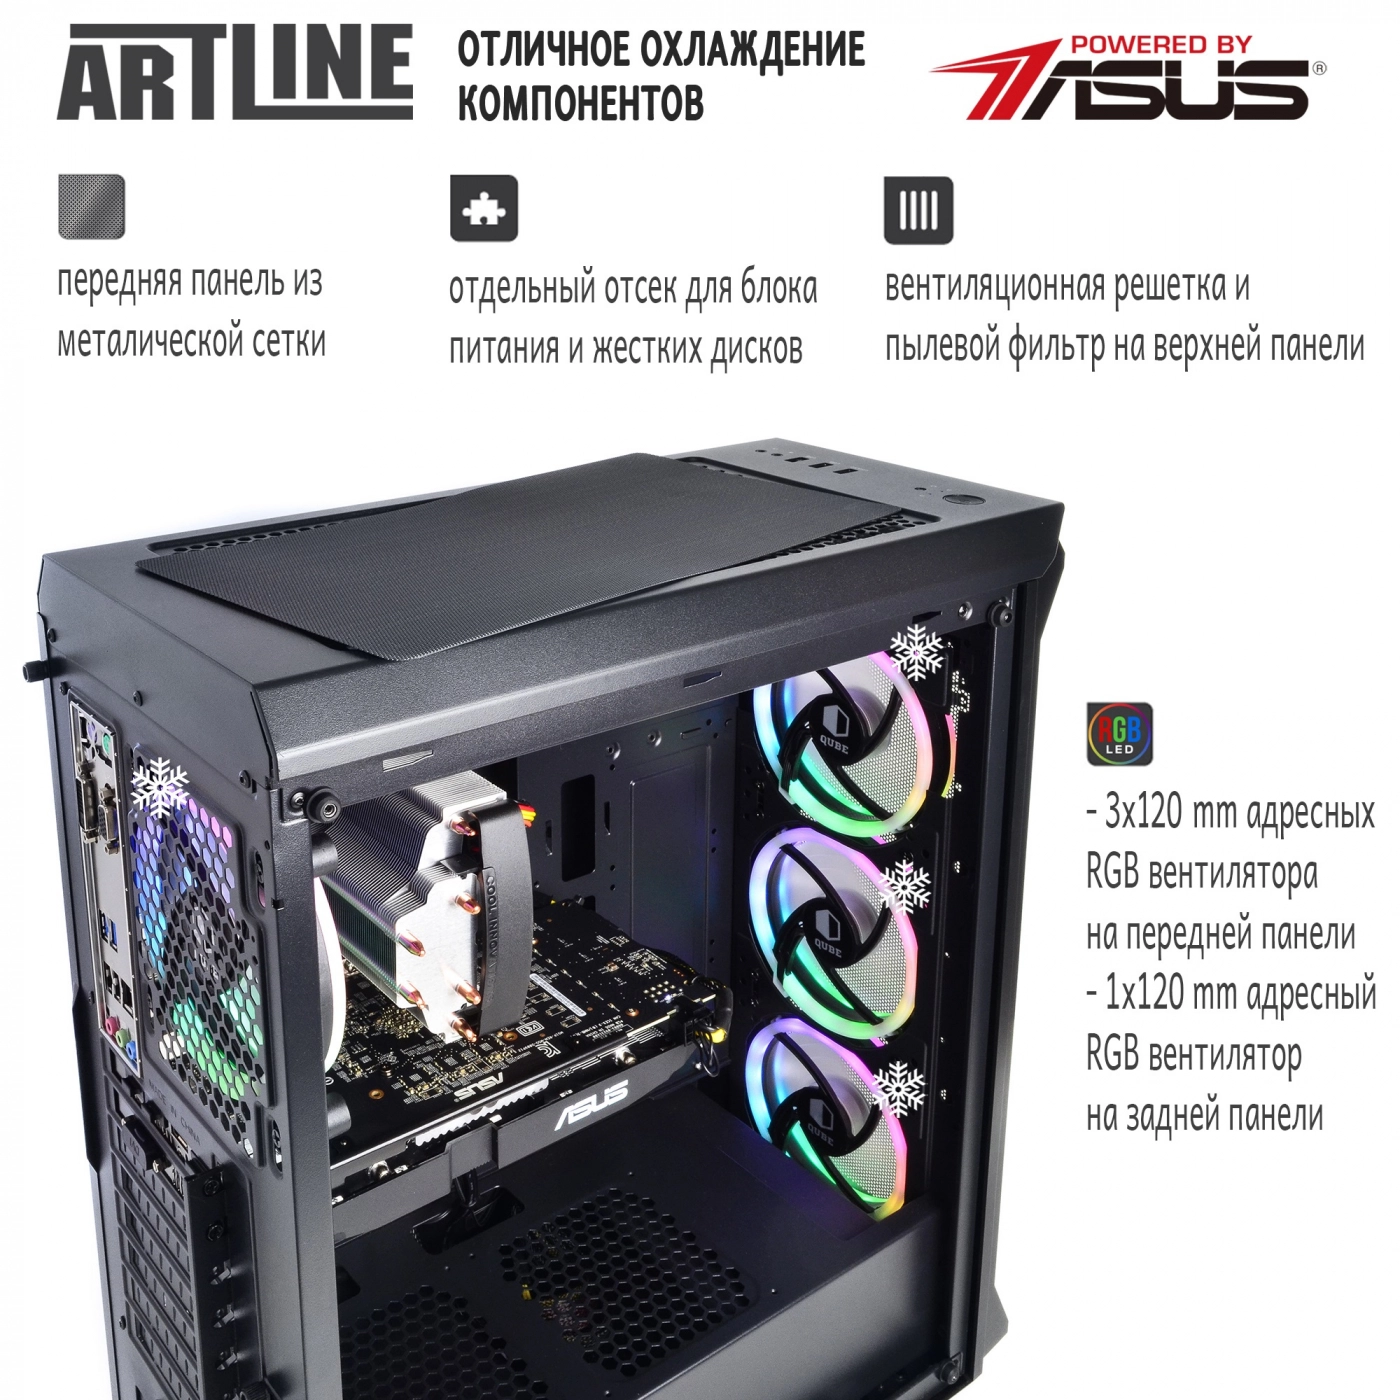 Купить Компьютер ARTLINE Gaming X77v31 - фото 2